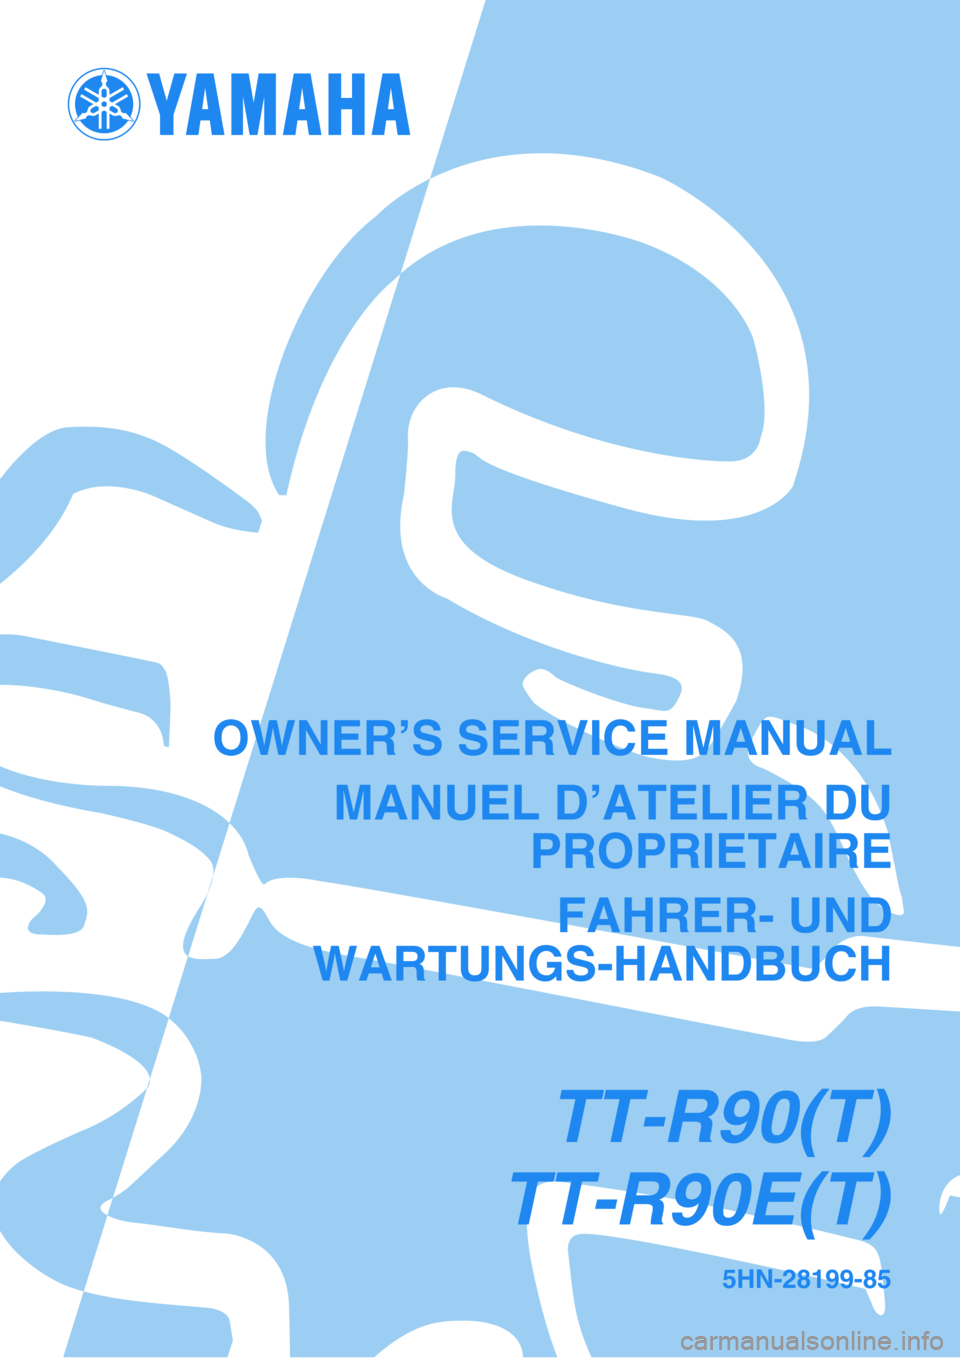 YAMAHA TTR90 2005  Owners Manual 5HN-28199-85
TT-R90(T)
TT-R90E(T)
OWNER’S SERVICE MANUAL
MANUEL D’ATELIER DU
PROPRIETAIRE
FAHRER- UND
WARTUNGS-HANDBUCH 